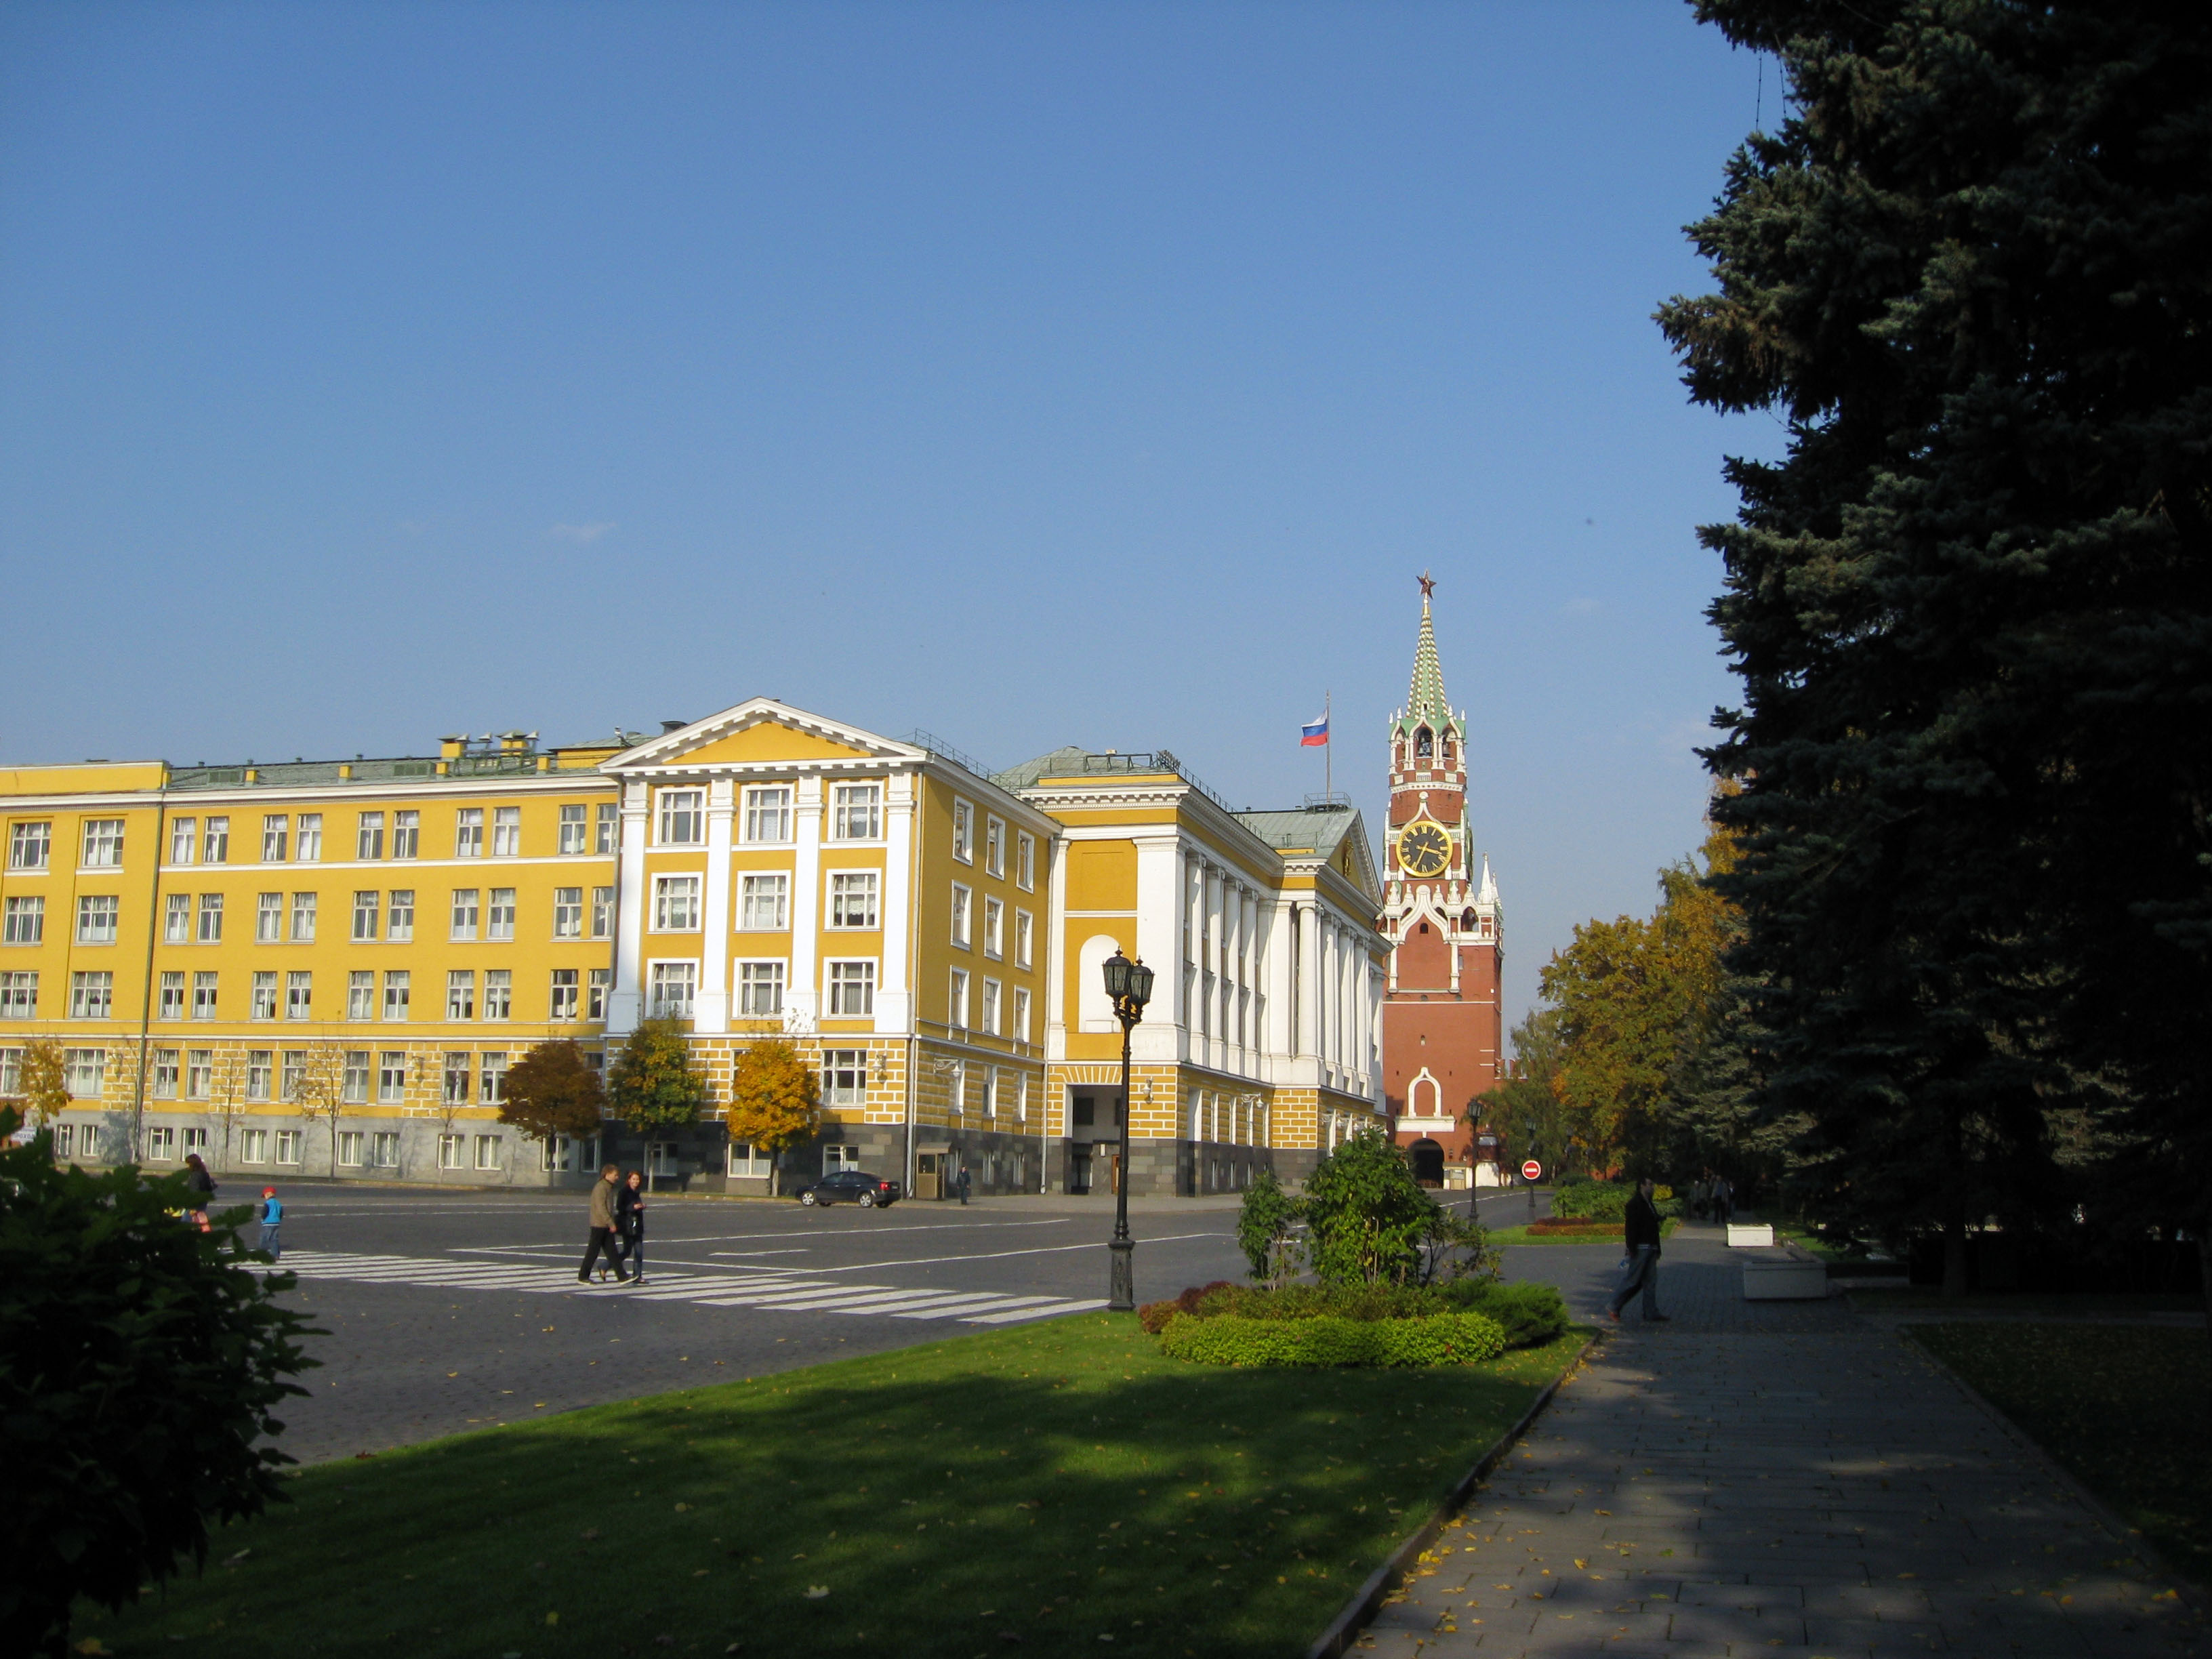 Palacio del Presidente de la Federación Rusa, torre Spásskaya con reloj principal del país, abeto, árbol conífero que está verde todo el año.